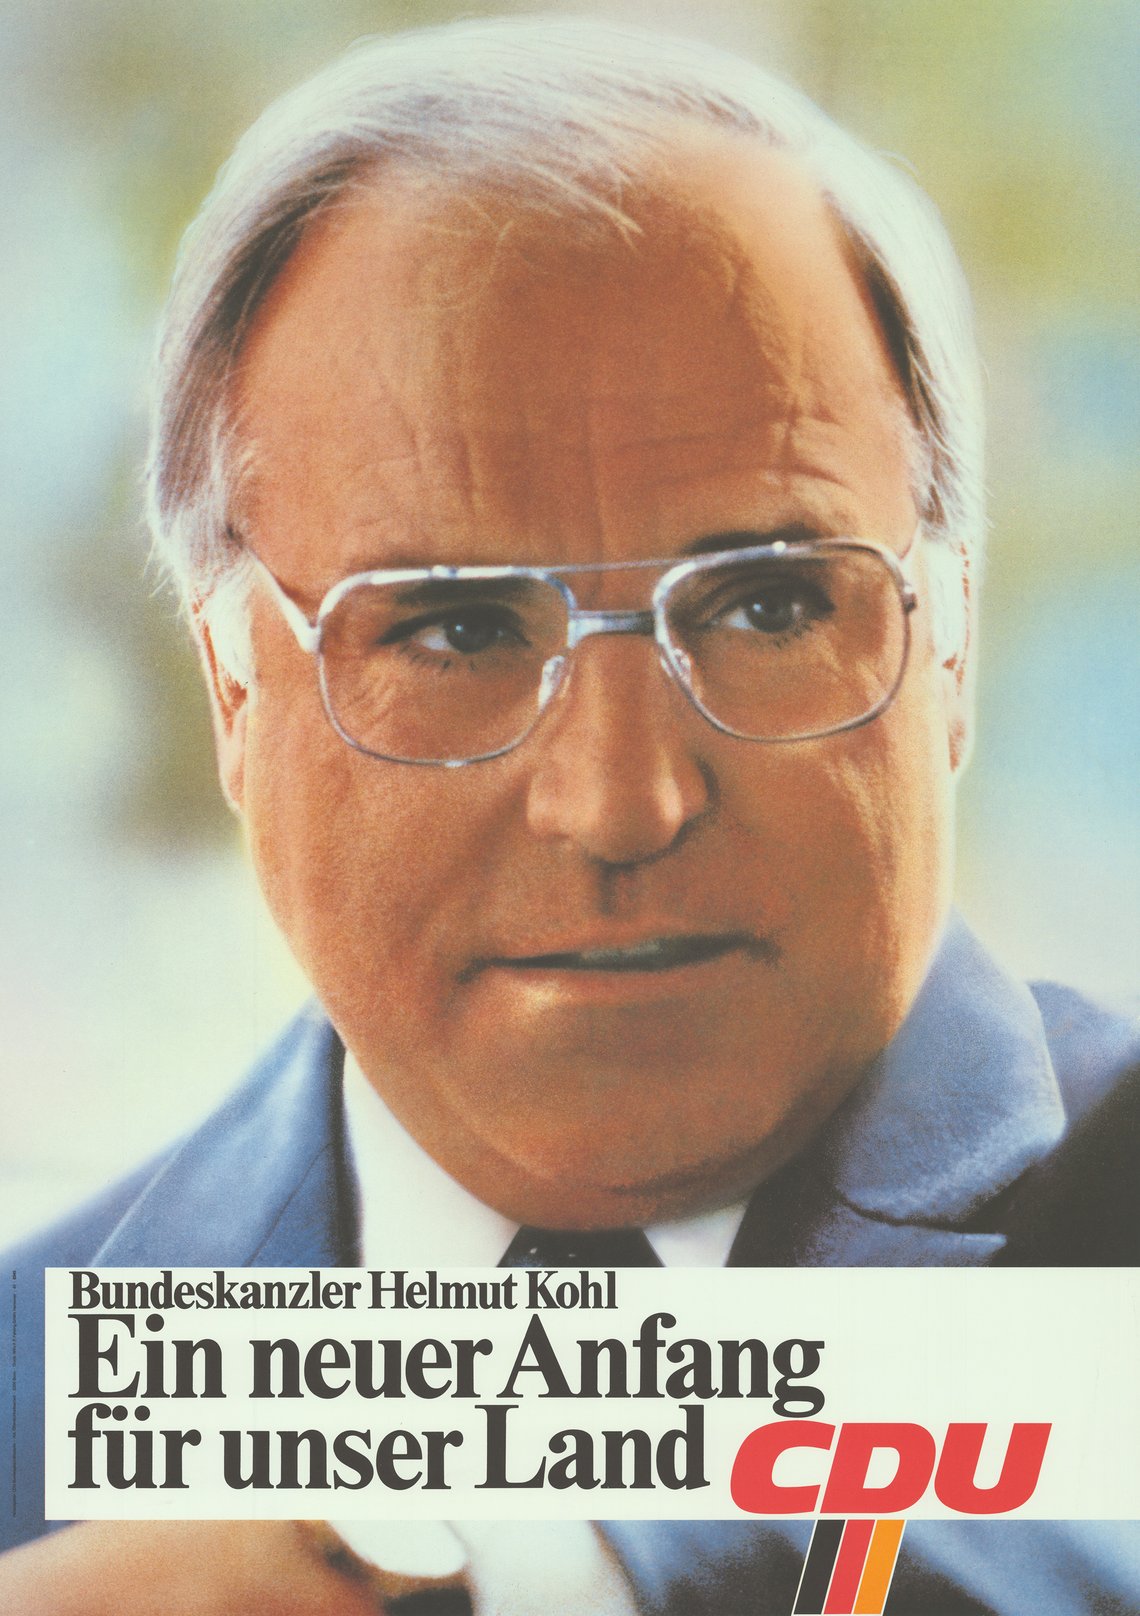 Plakat zur Bundestagswahl 1983 mit Helmut Kohl und der Aufschrift "Ein neuer Anfang für unser Land, CDU"